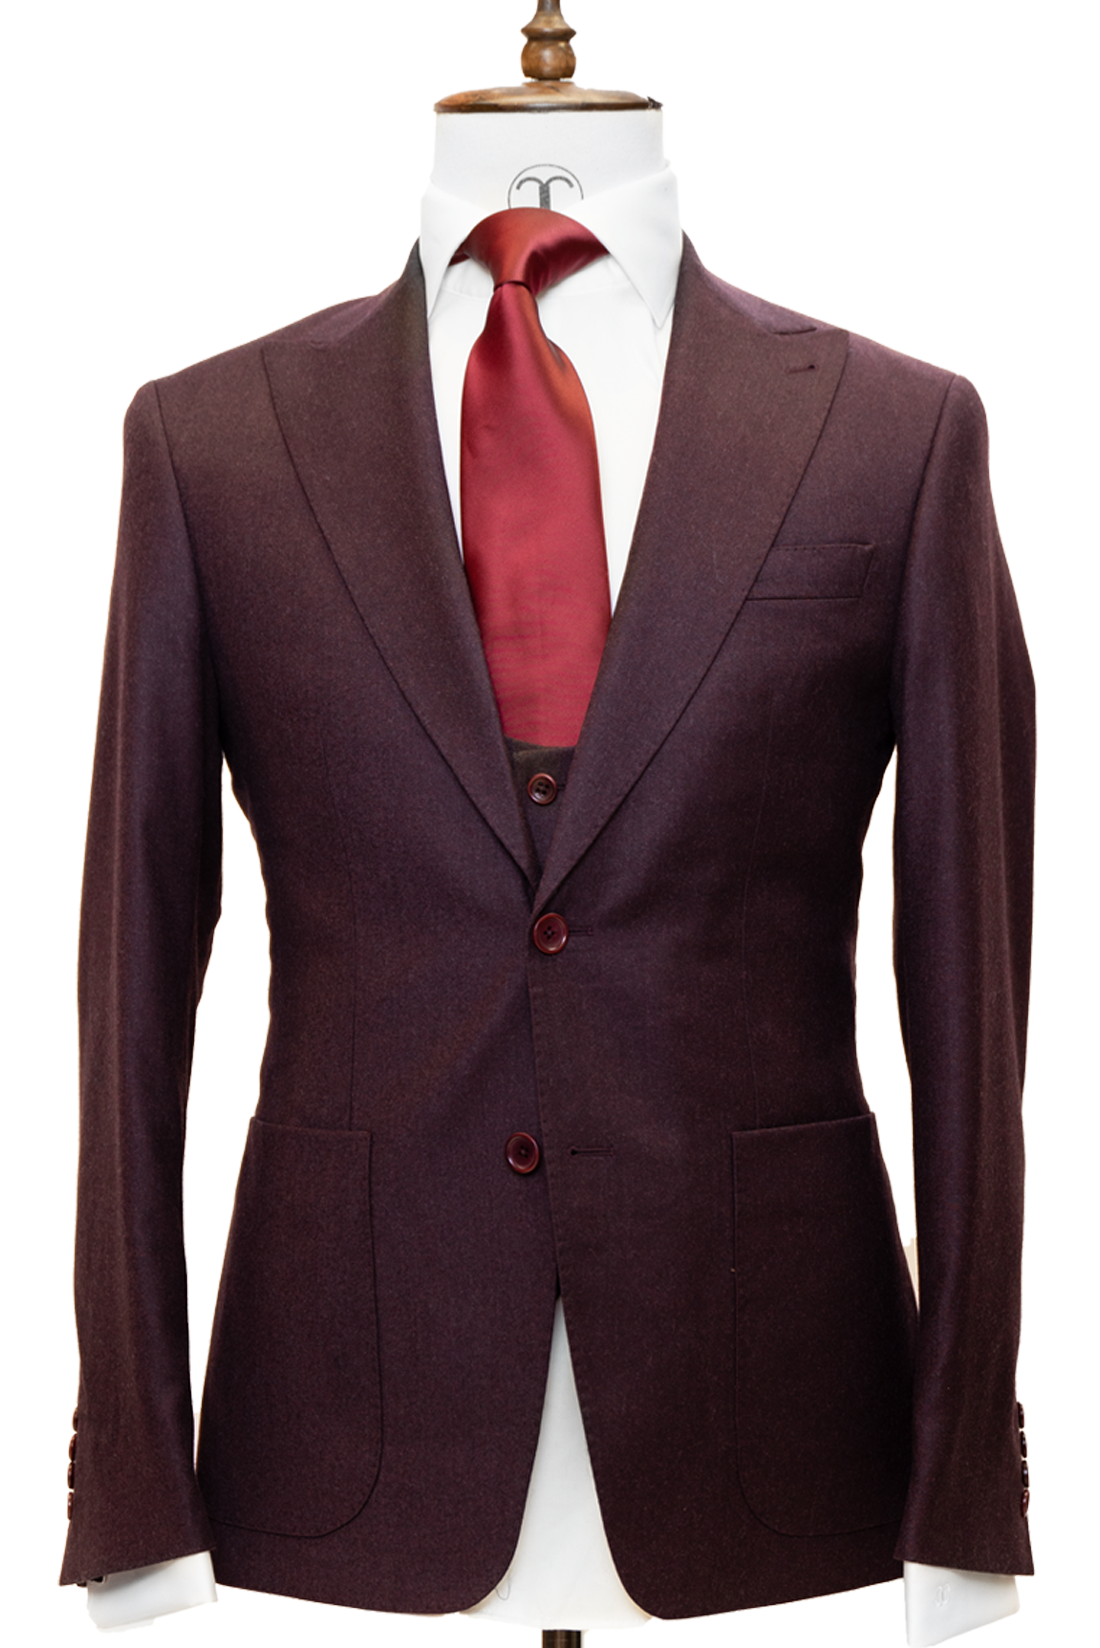 Zignone - Sangria Cashmere 3-Piece Fit Slim Fit Suit with Patch Pockets